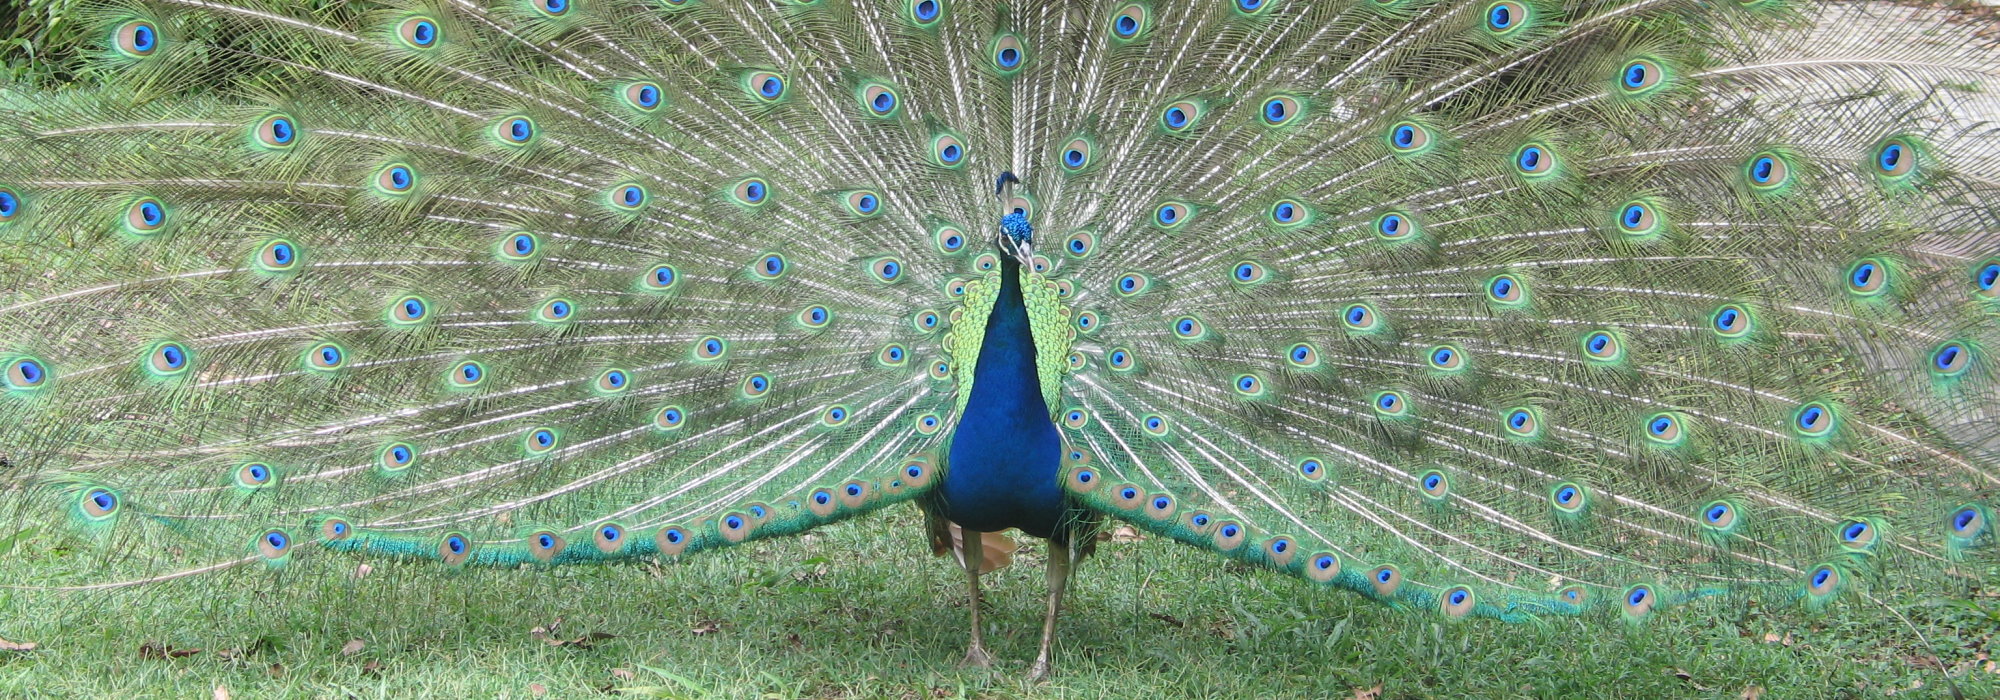 Alistare the Peacock